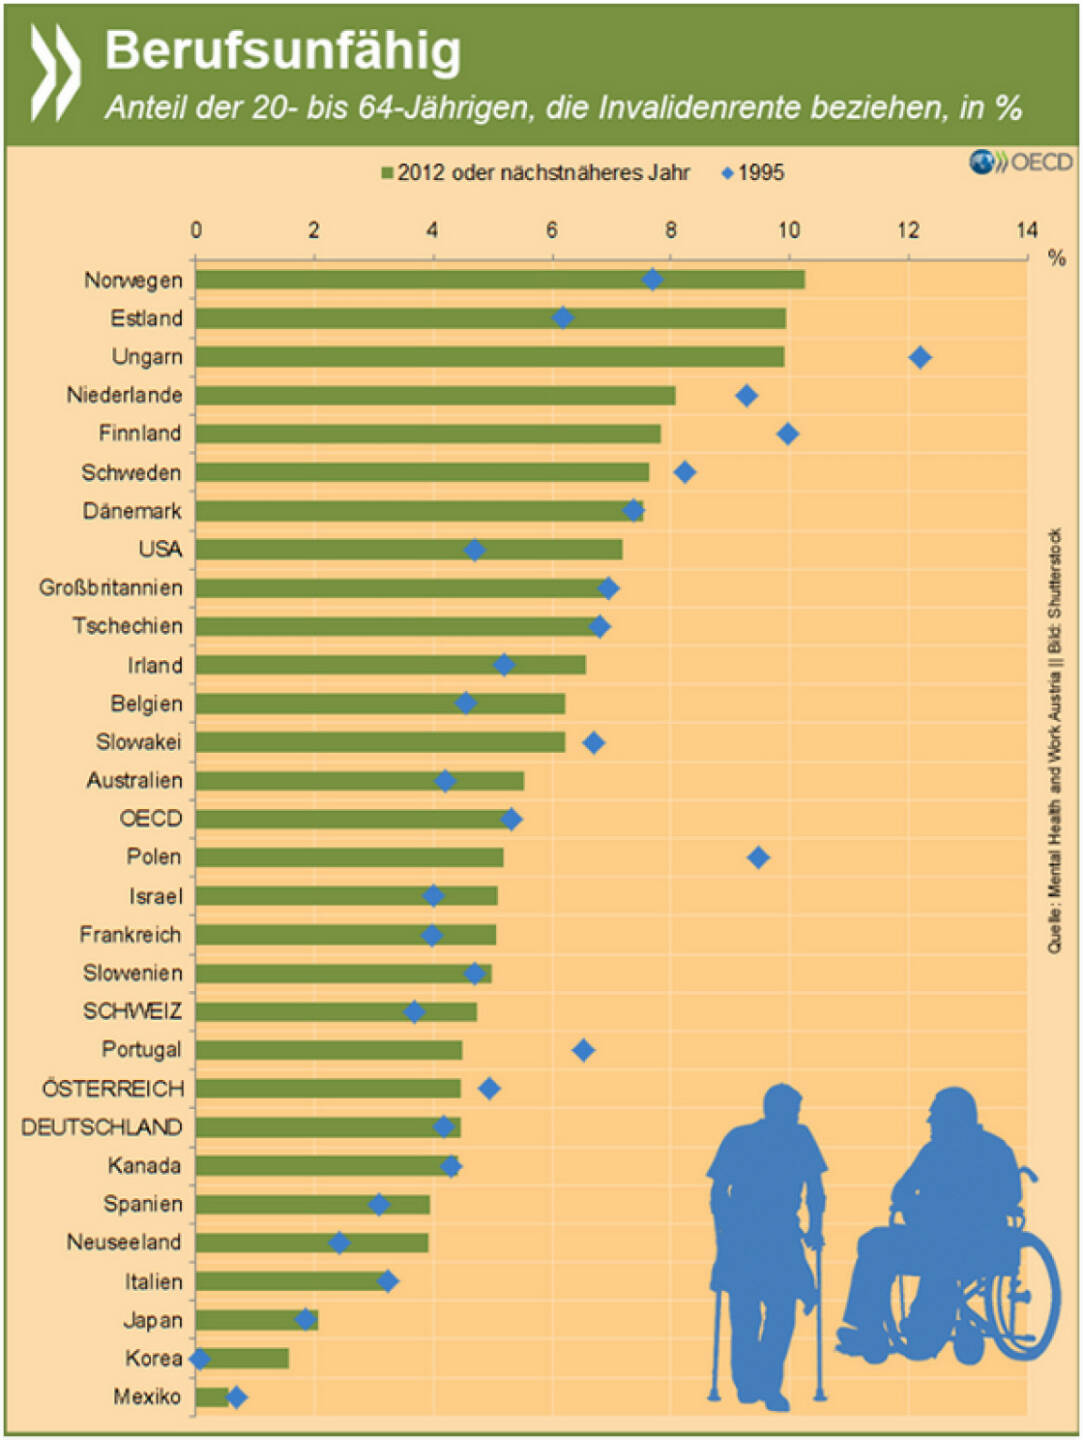 Fit for the Job? In der OECD beziehen mehr als fünf Prozent der Menschen im Erwerbsalter eine Invaliditätsrente. In der Mehrzahl der Staaten ist der Anteil seit Mitte der 90er Jahre gestiegen. Vor allem psychische Erkrankungen nehmen zu.
Mehr Infos zur Beschäftigung von Menschen mit psychischen Problemen speziell in Österreich findet Ihr unter: http://bit.ly/1jCwKNS (S. 29f.)